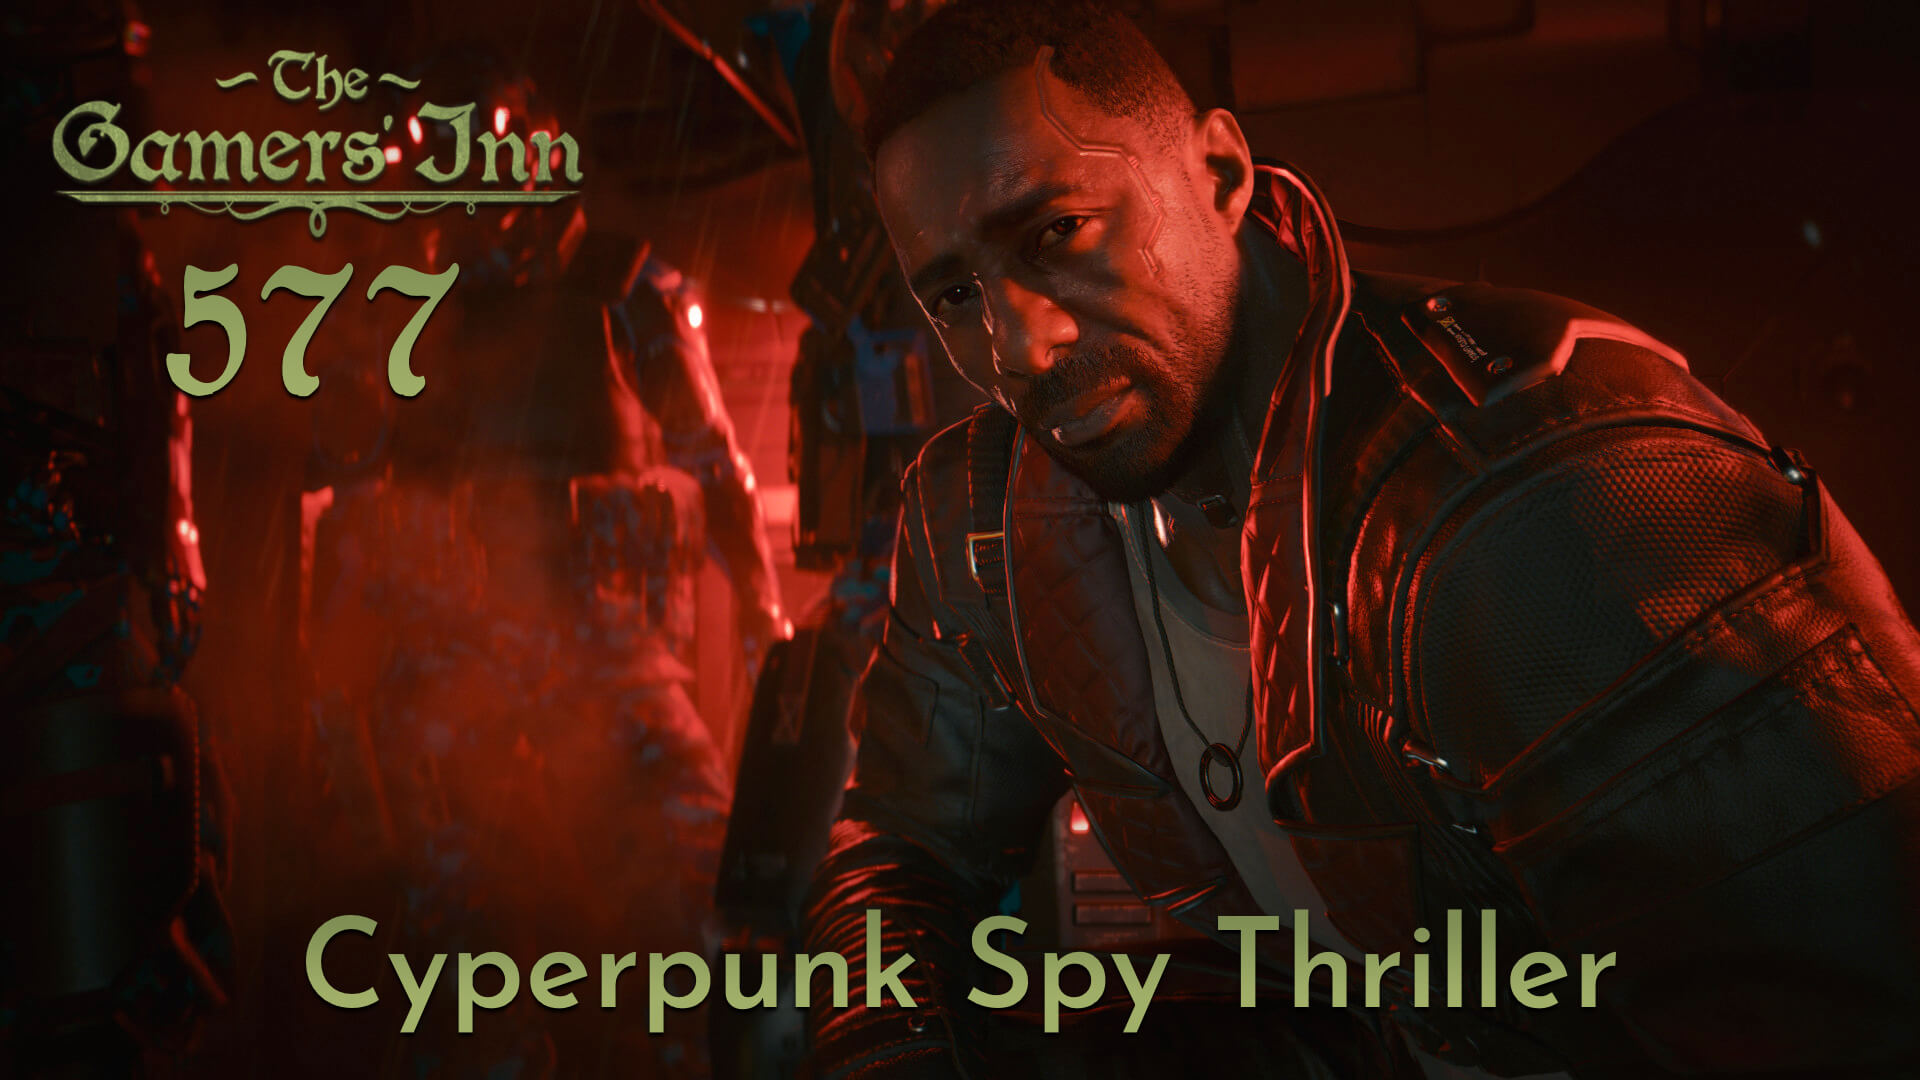 TGI 577 - Cyperpunk Spy Thriller